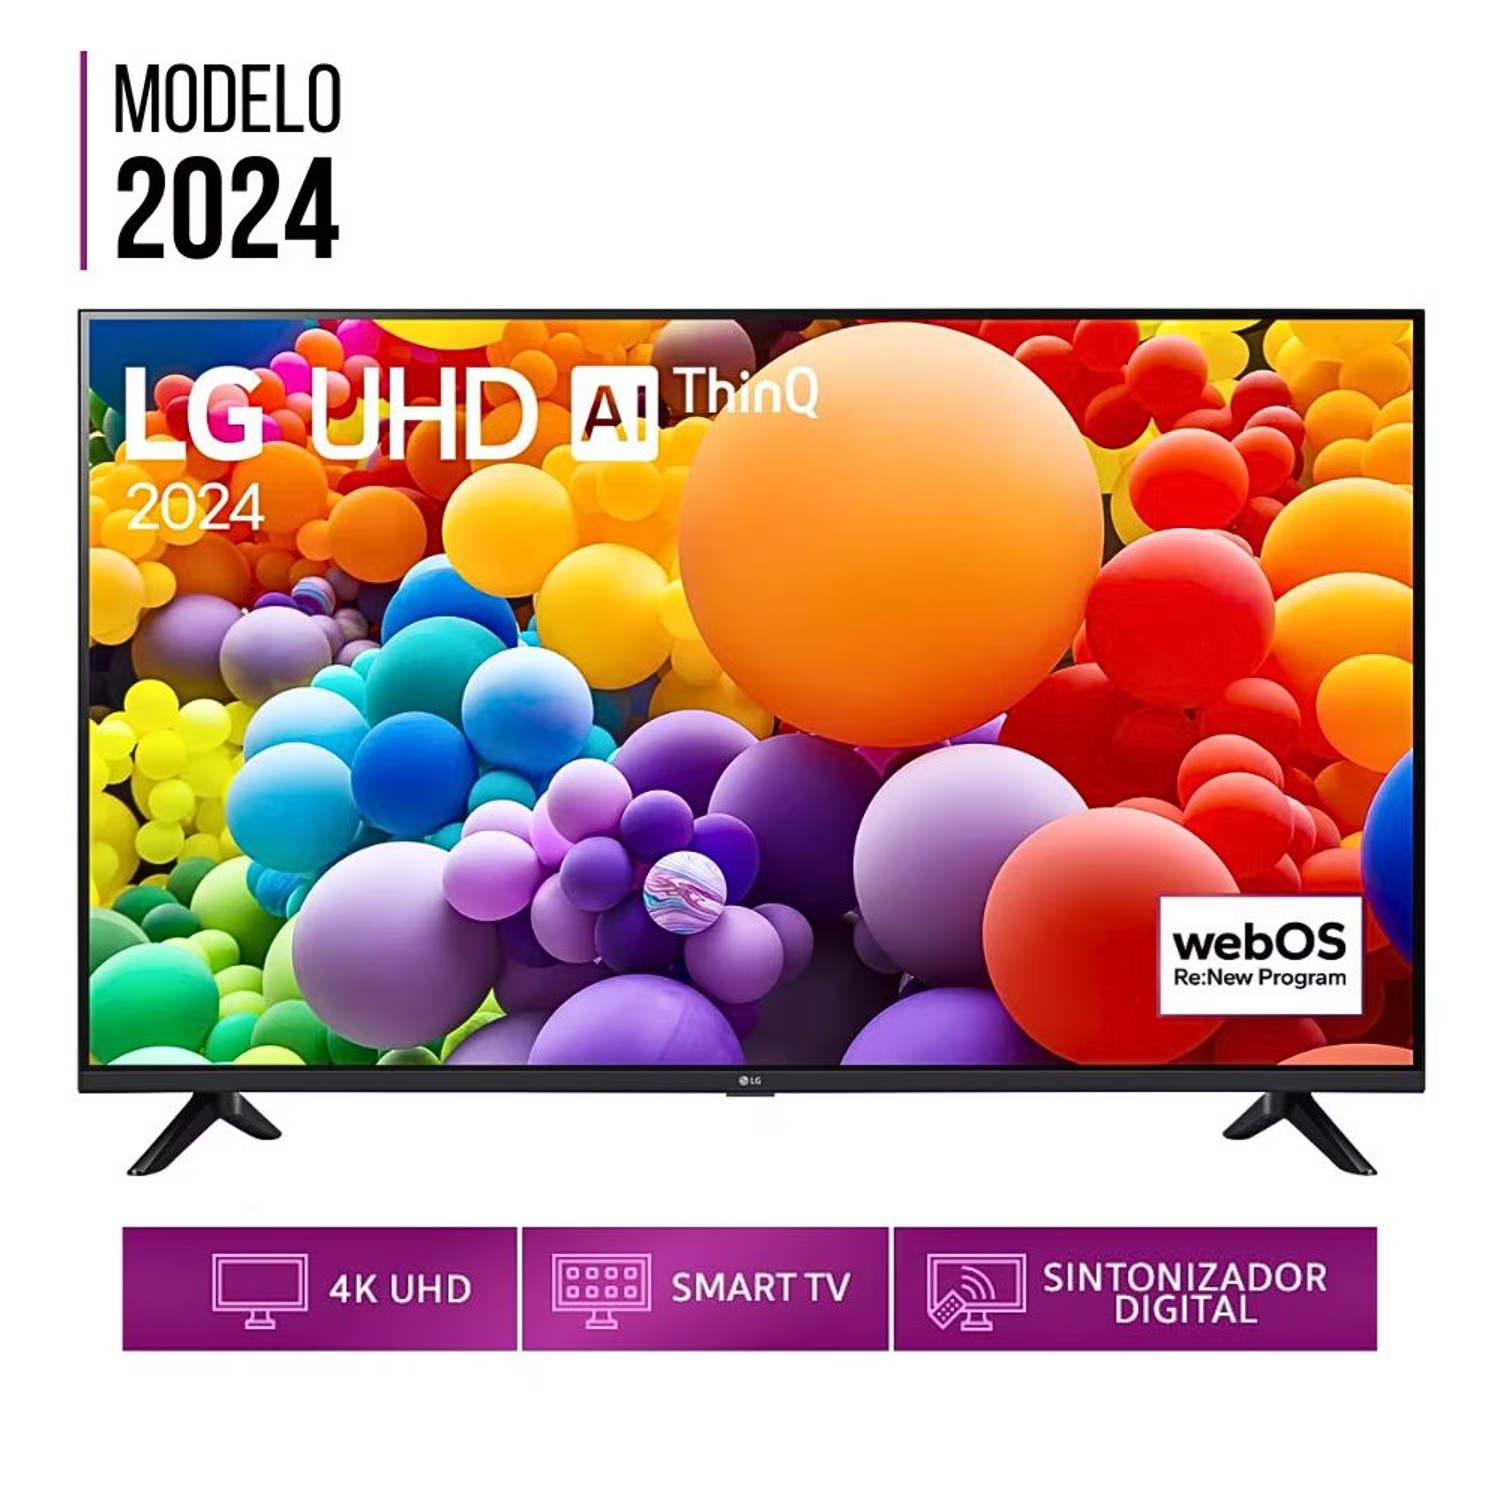 Televisor LG 50 pulg. Smart TV LED 4K UHD ThinQ AI 50UT7300PSA Modelo 2024